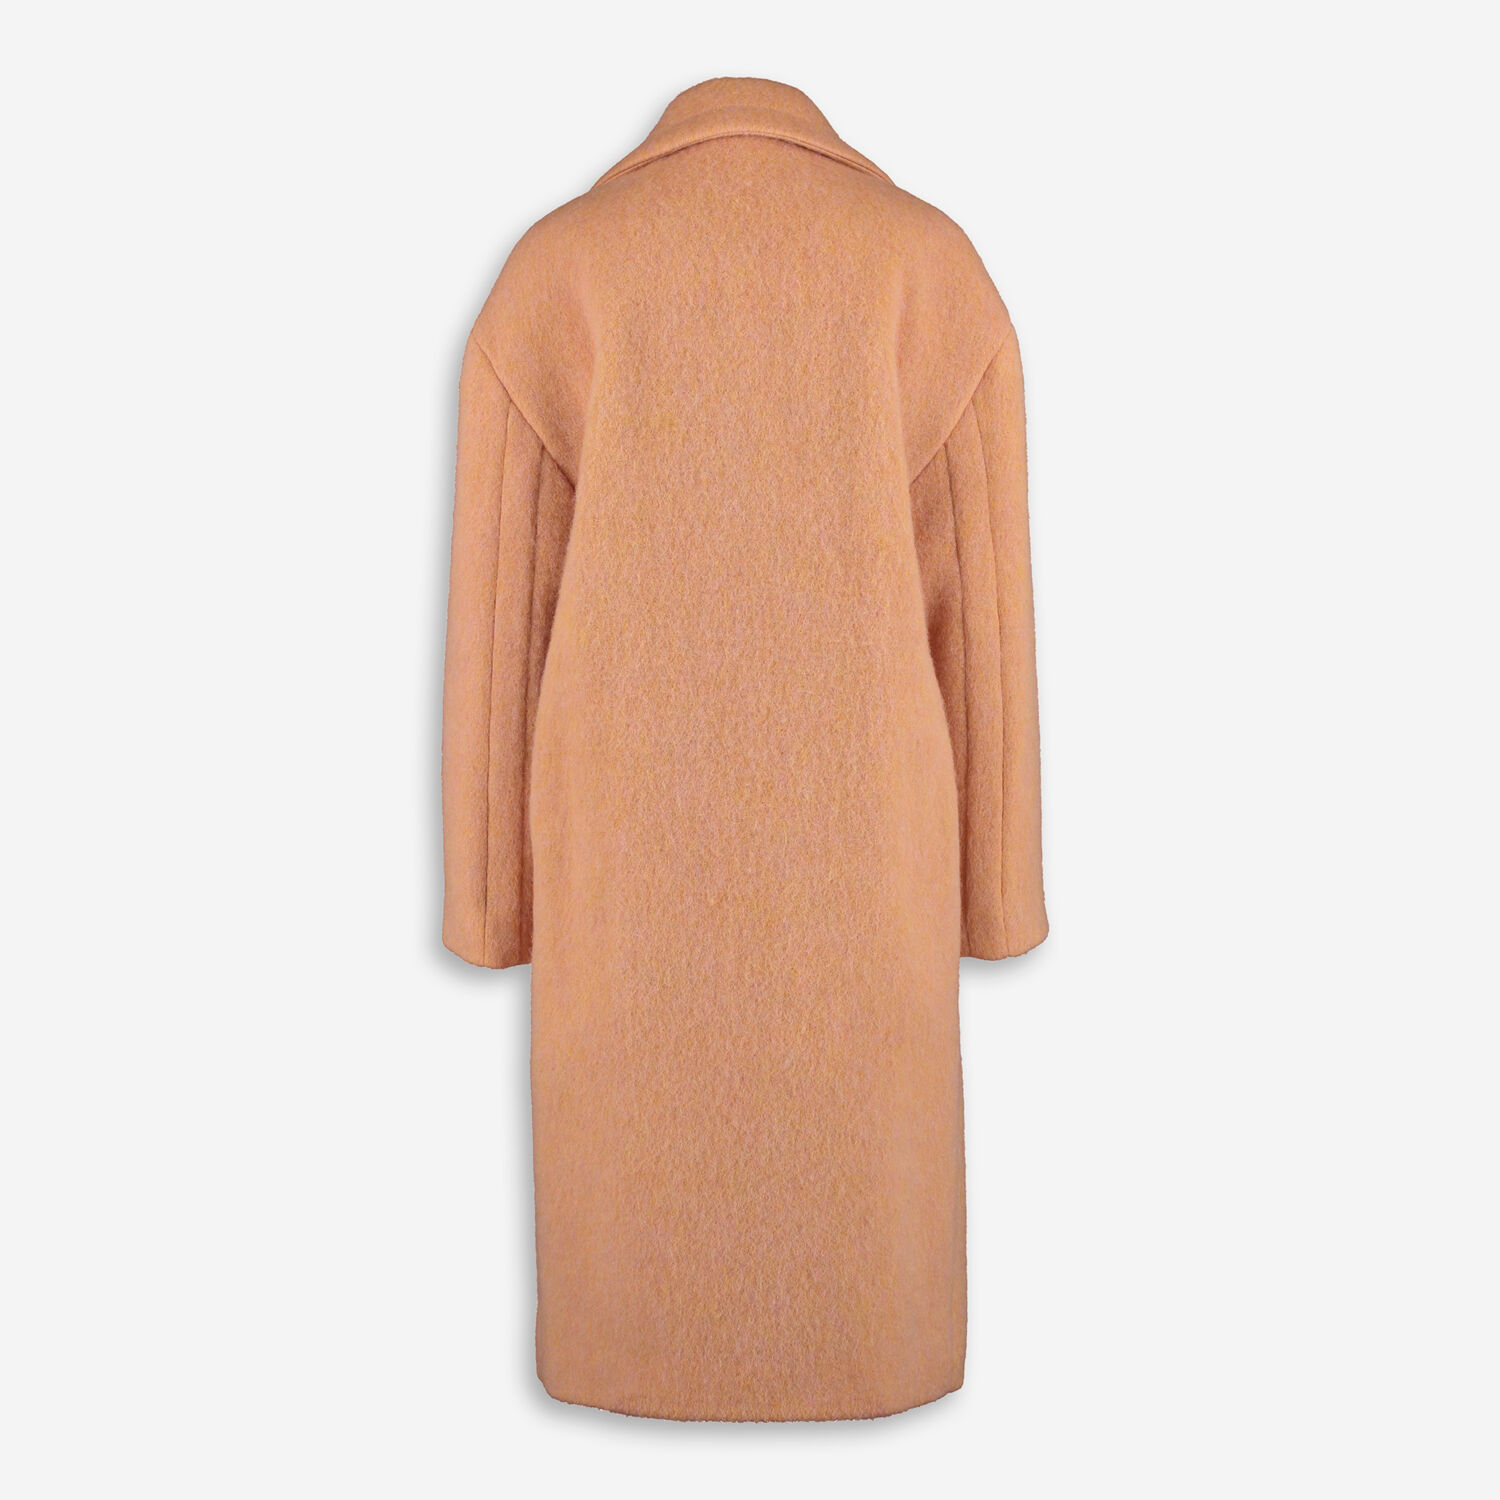 Orange Wool Surface Coat - TK Maxx UK